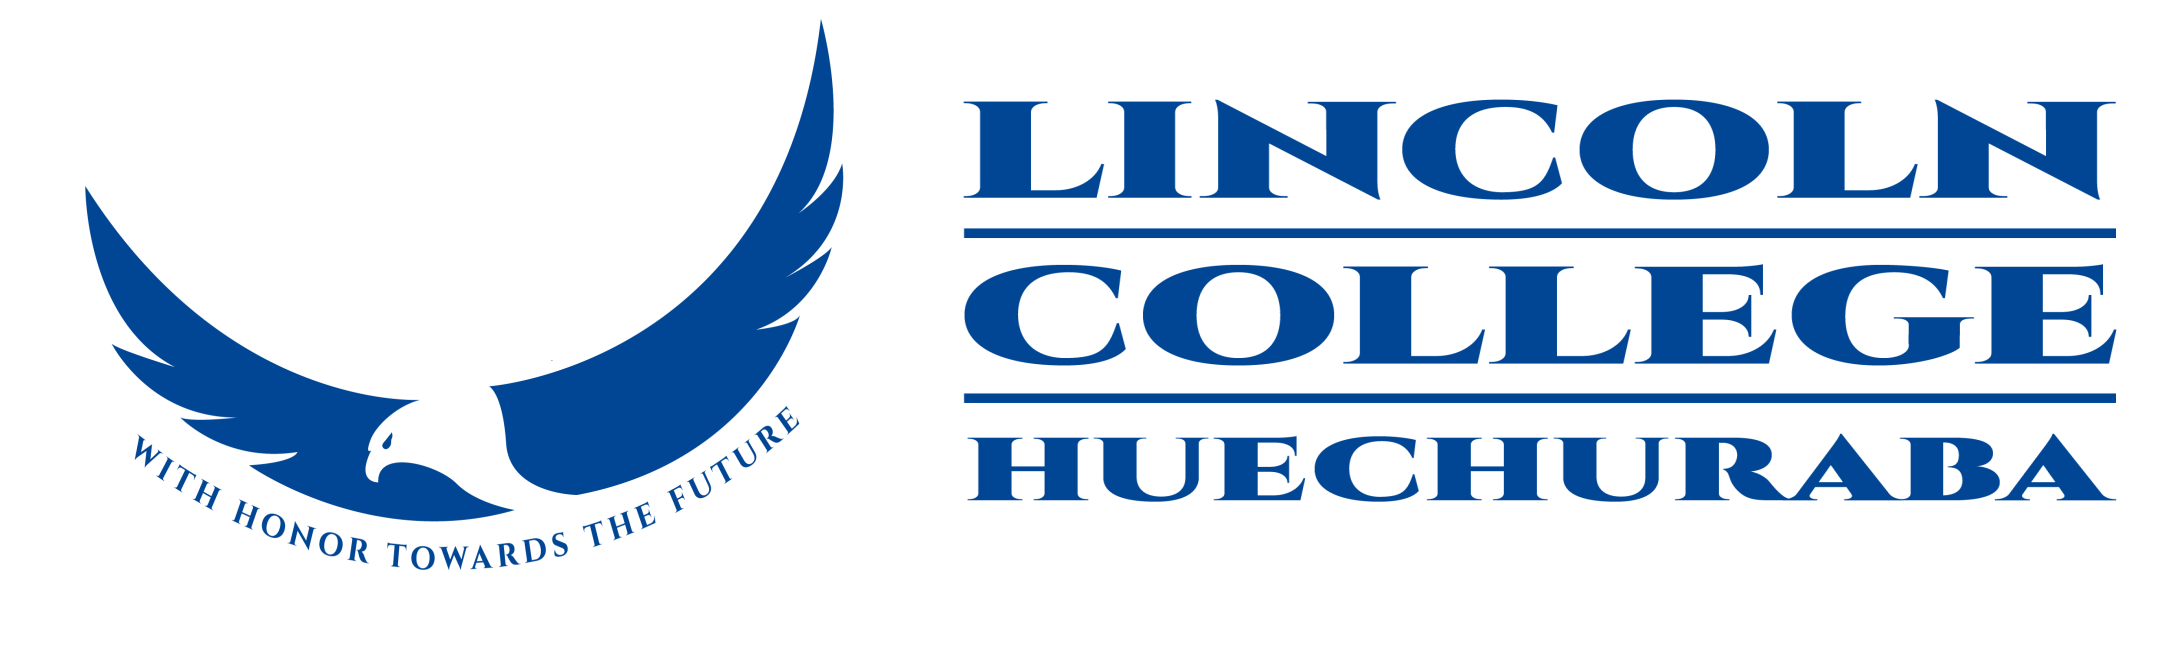 Logo de Lincoln College Huechuraba